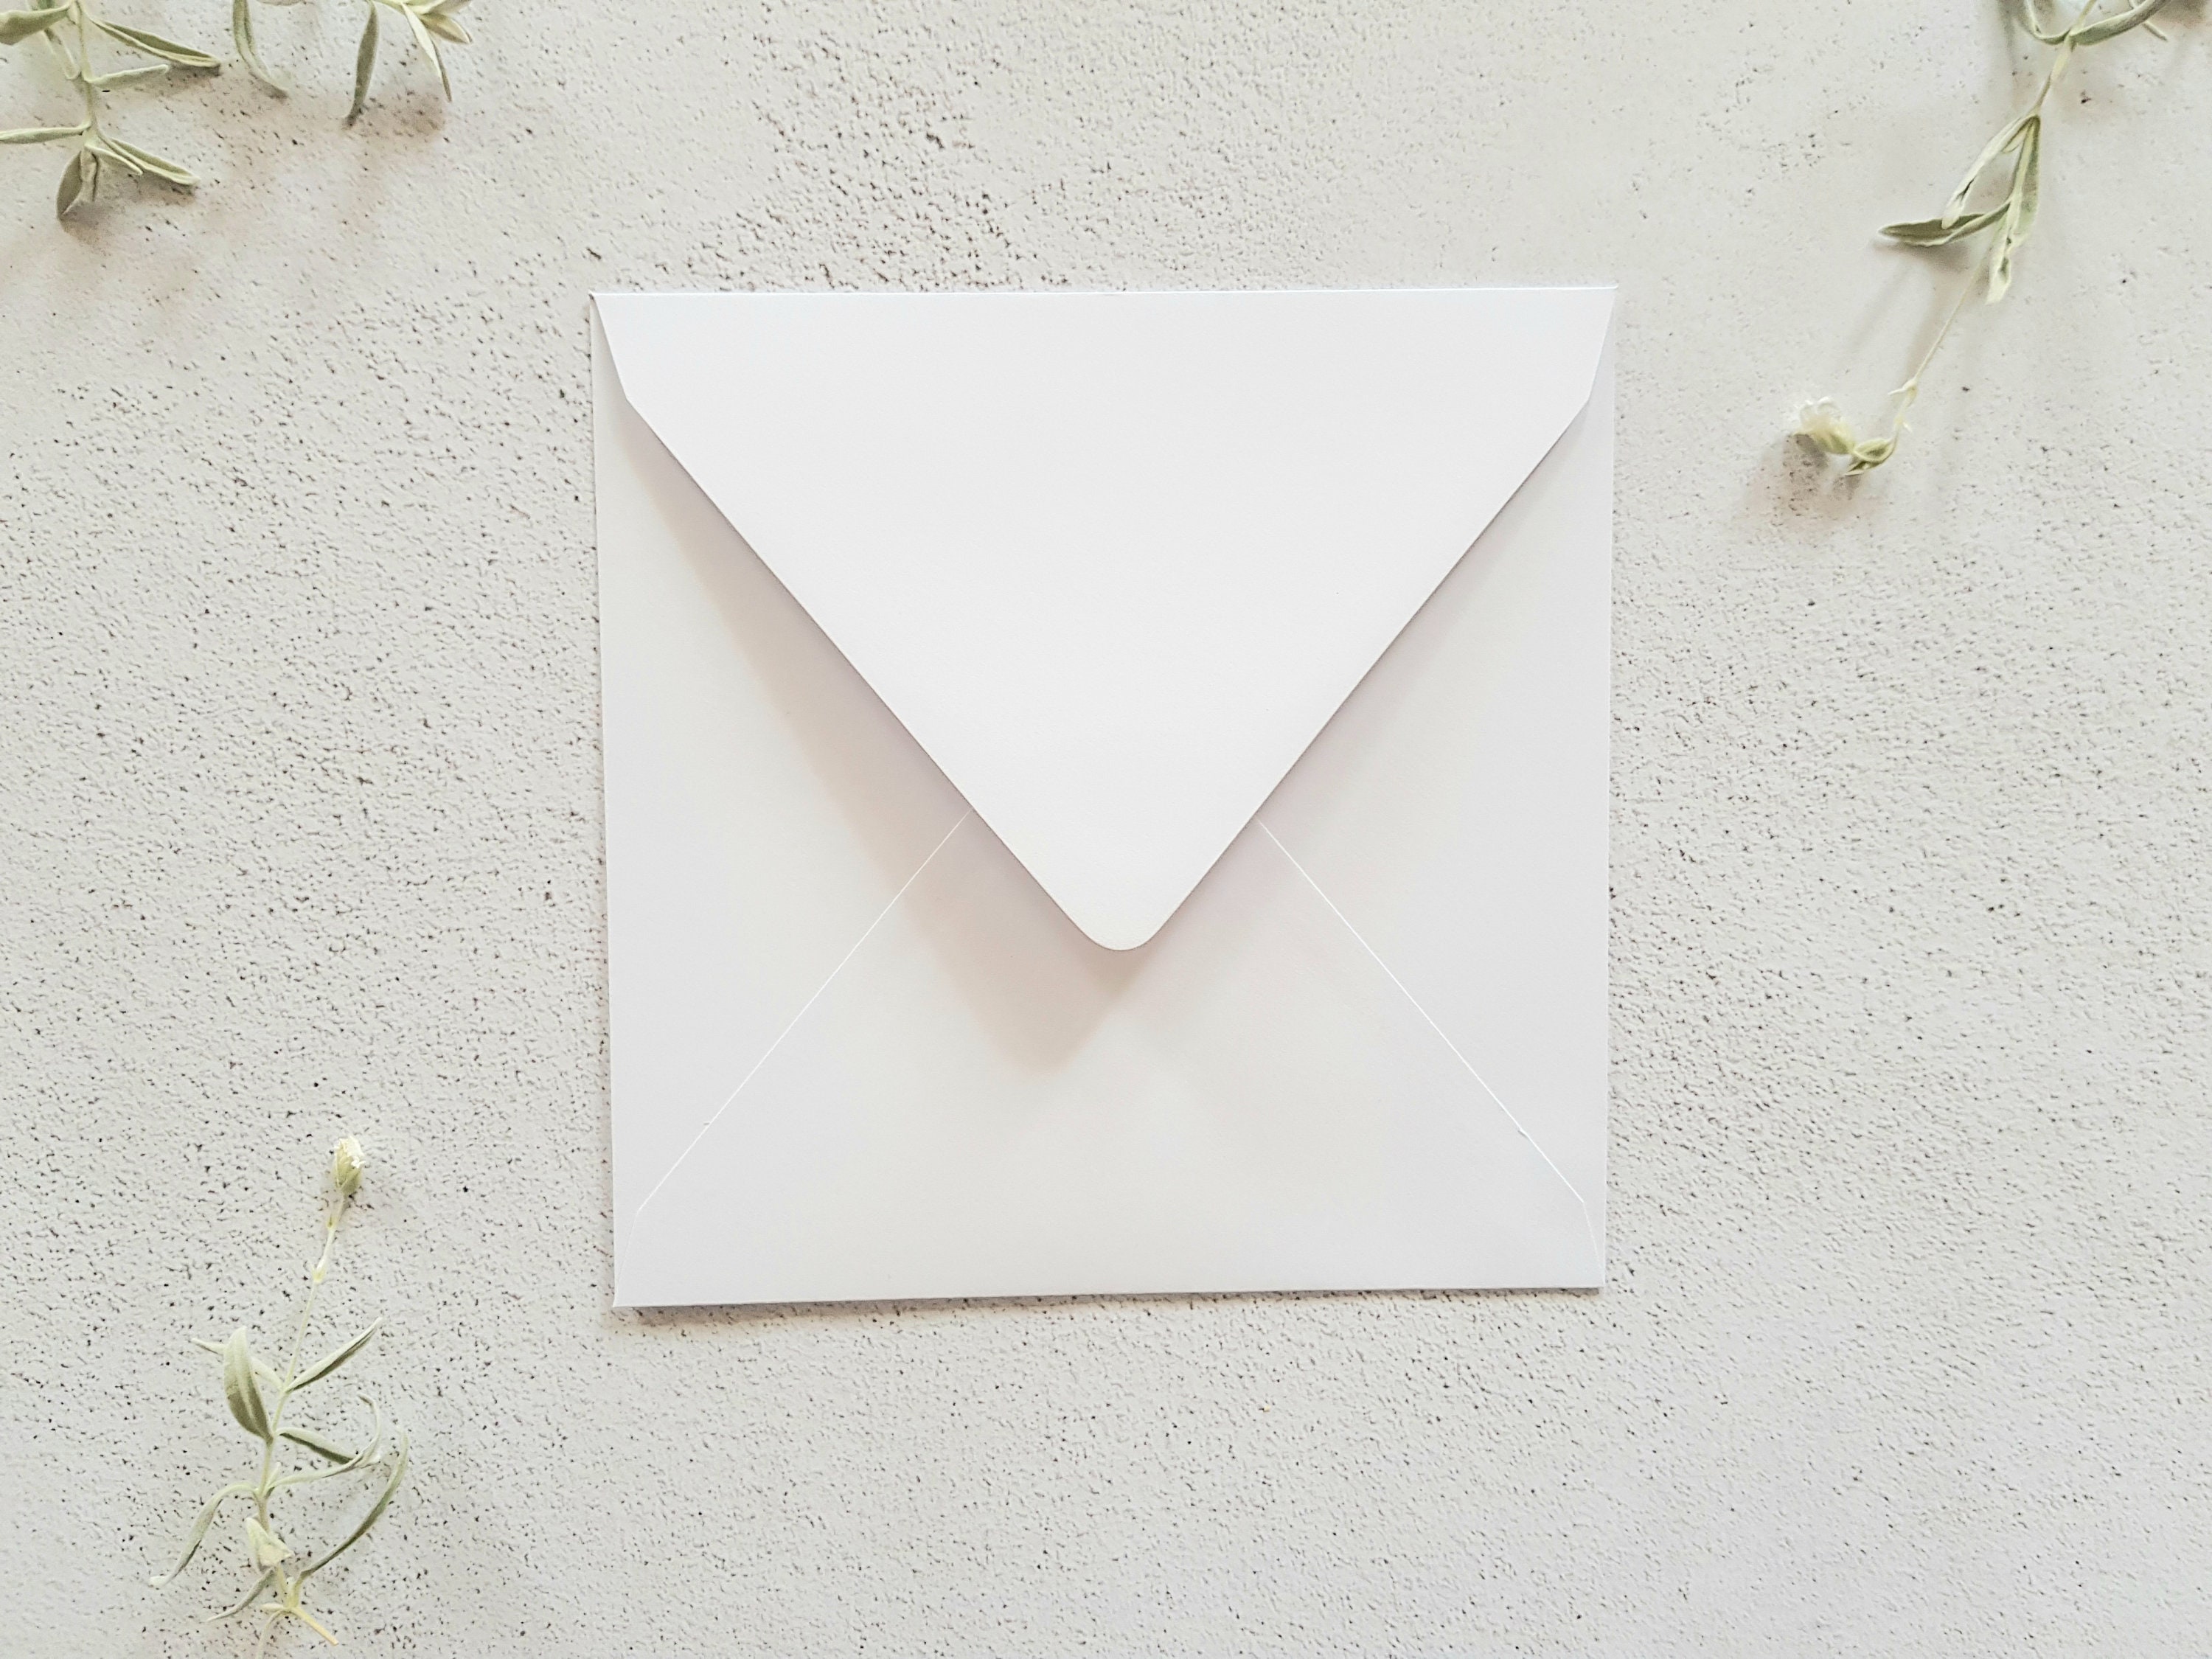 Enveloppe blanche carrée 15x15 cm, Haute qualité